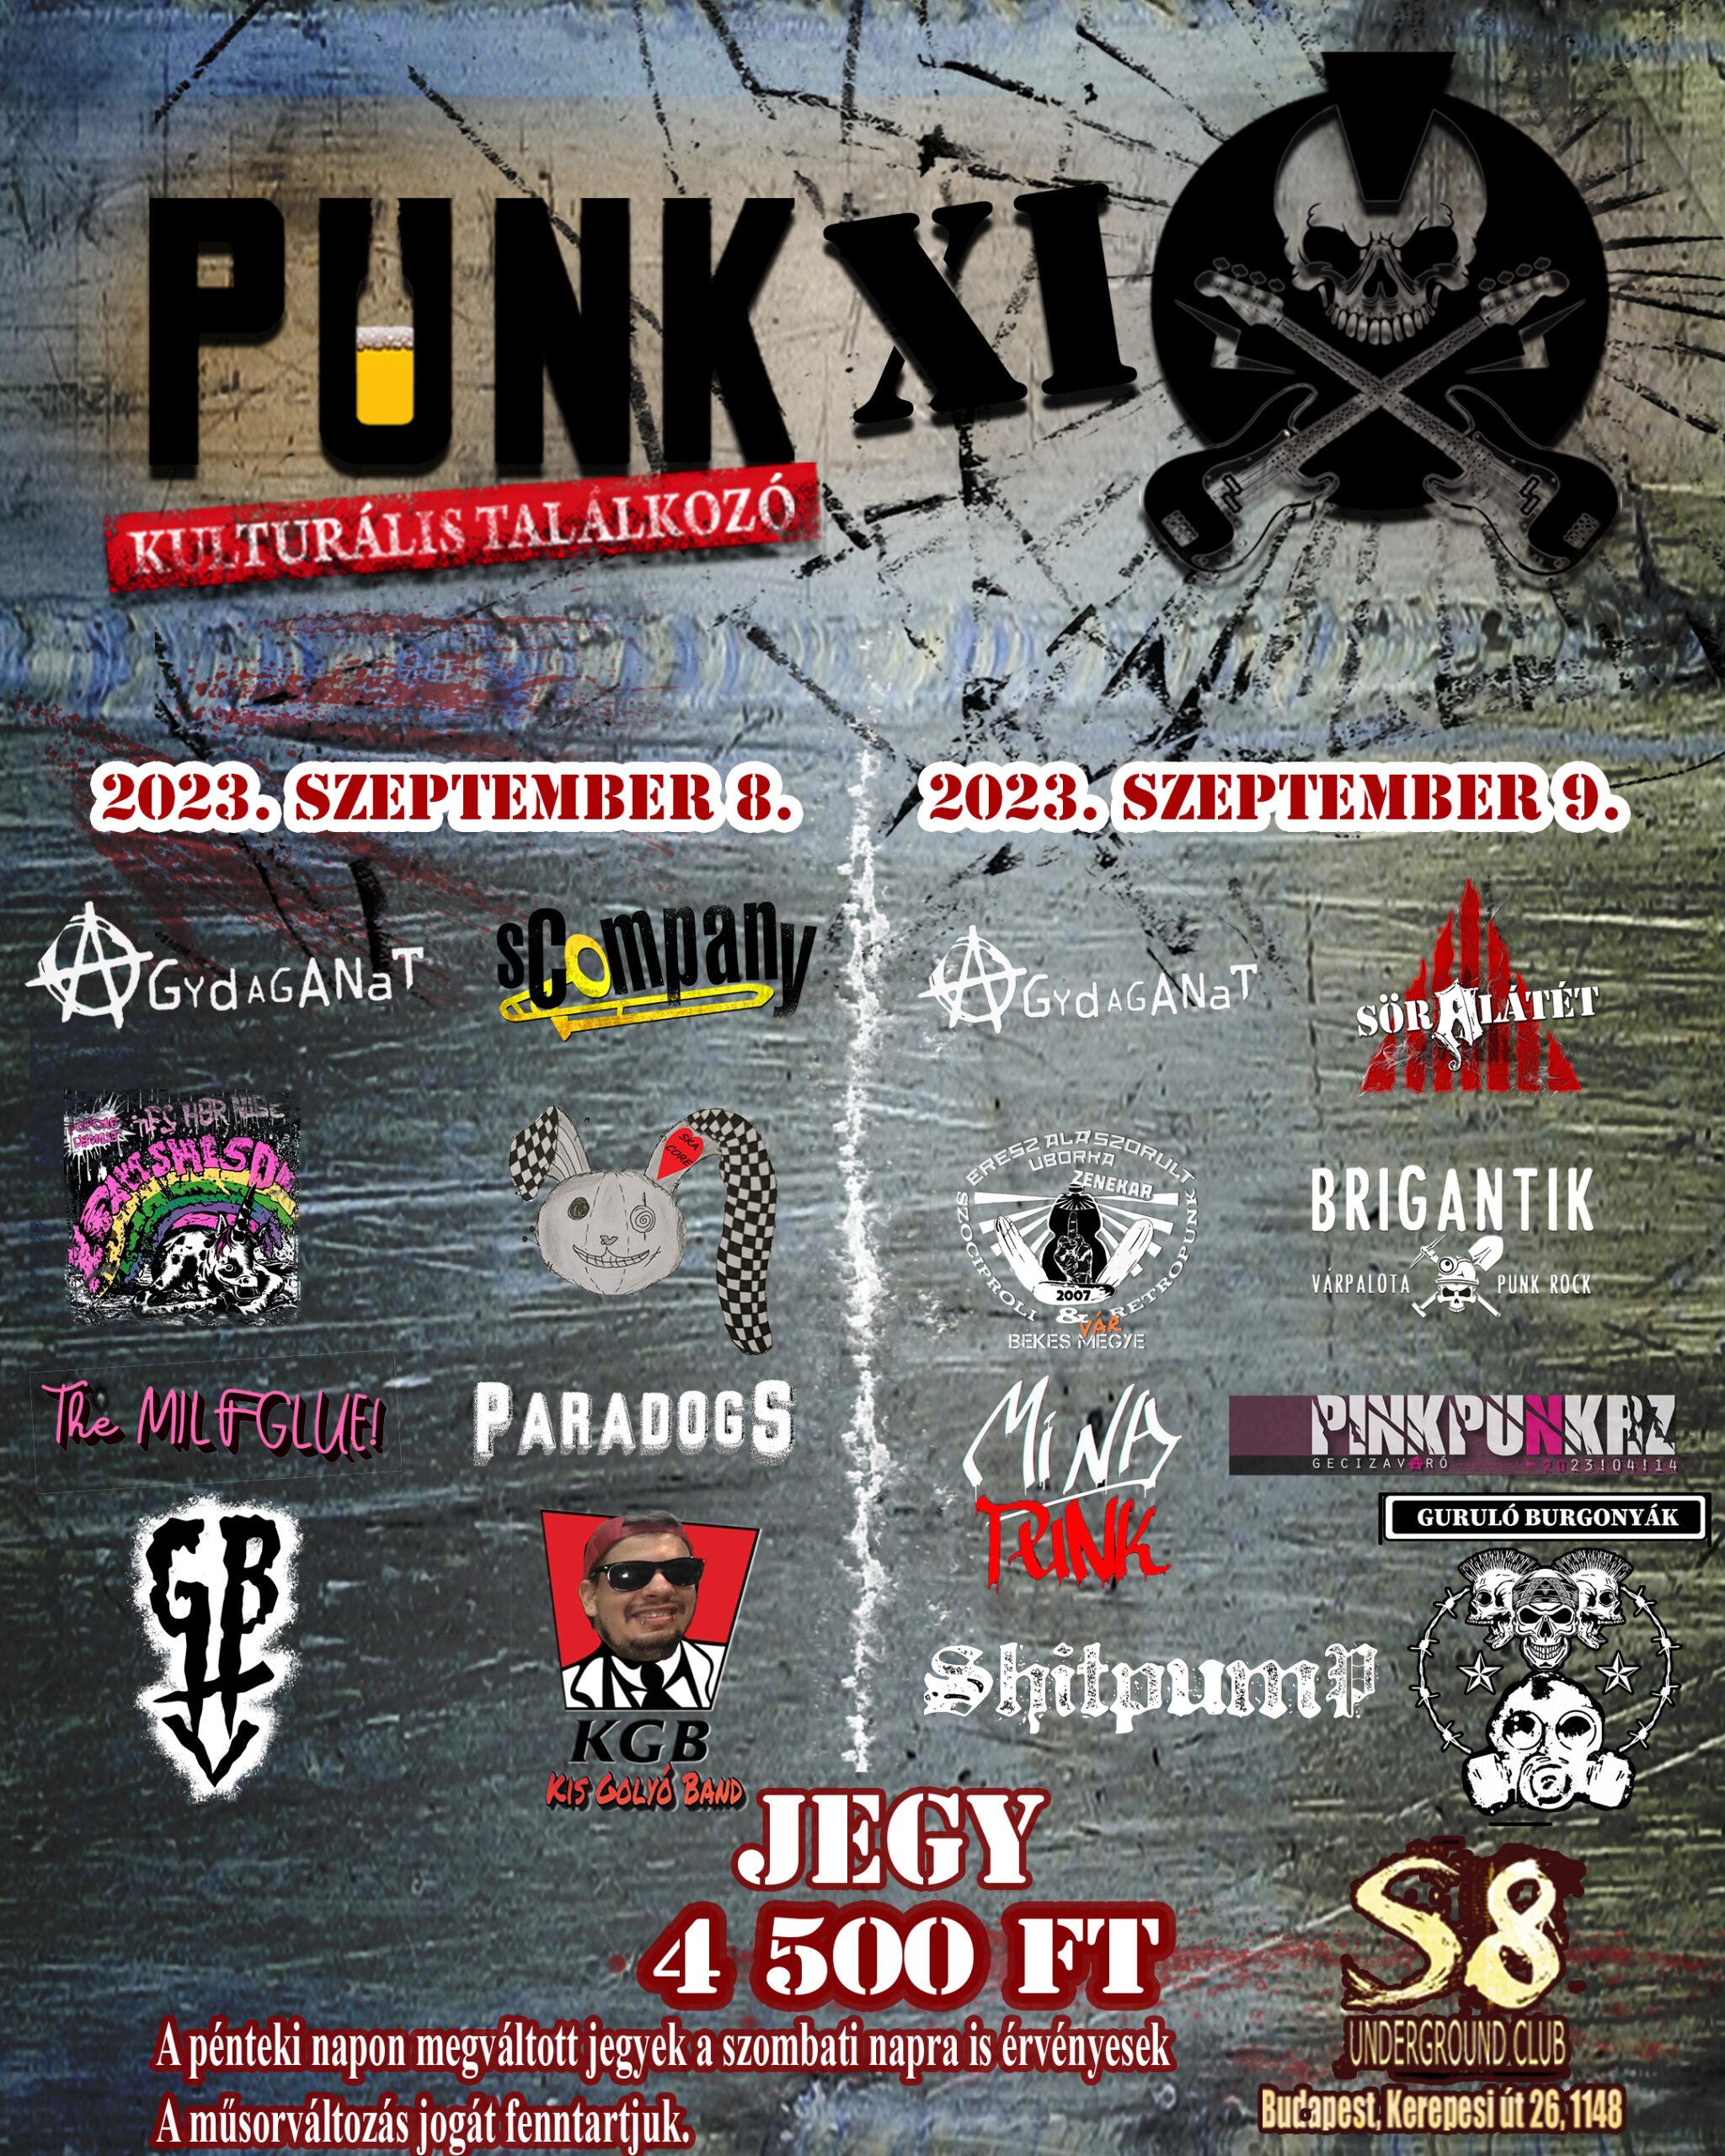 XI. Punk Kulturális Találkozó - https://soralatet.com